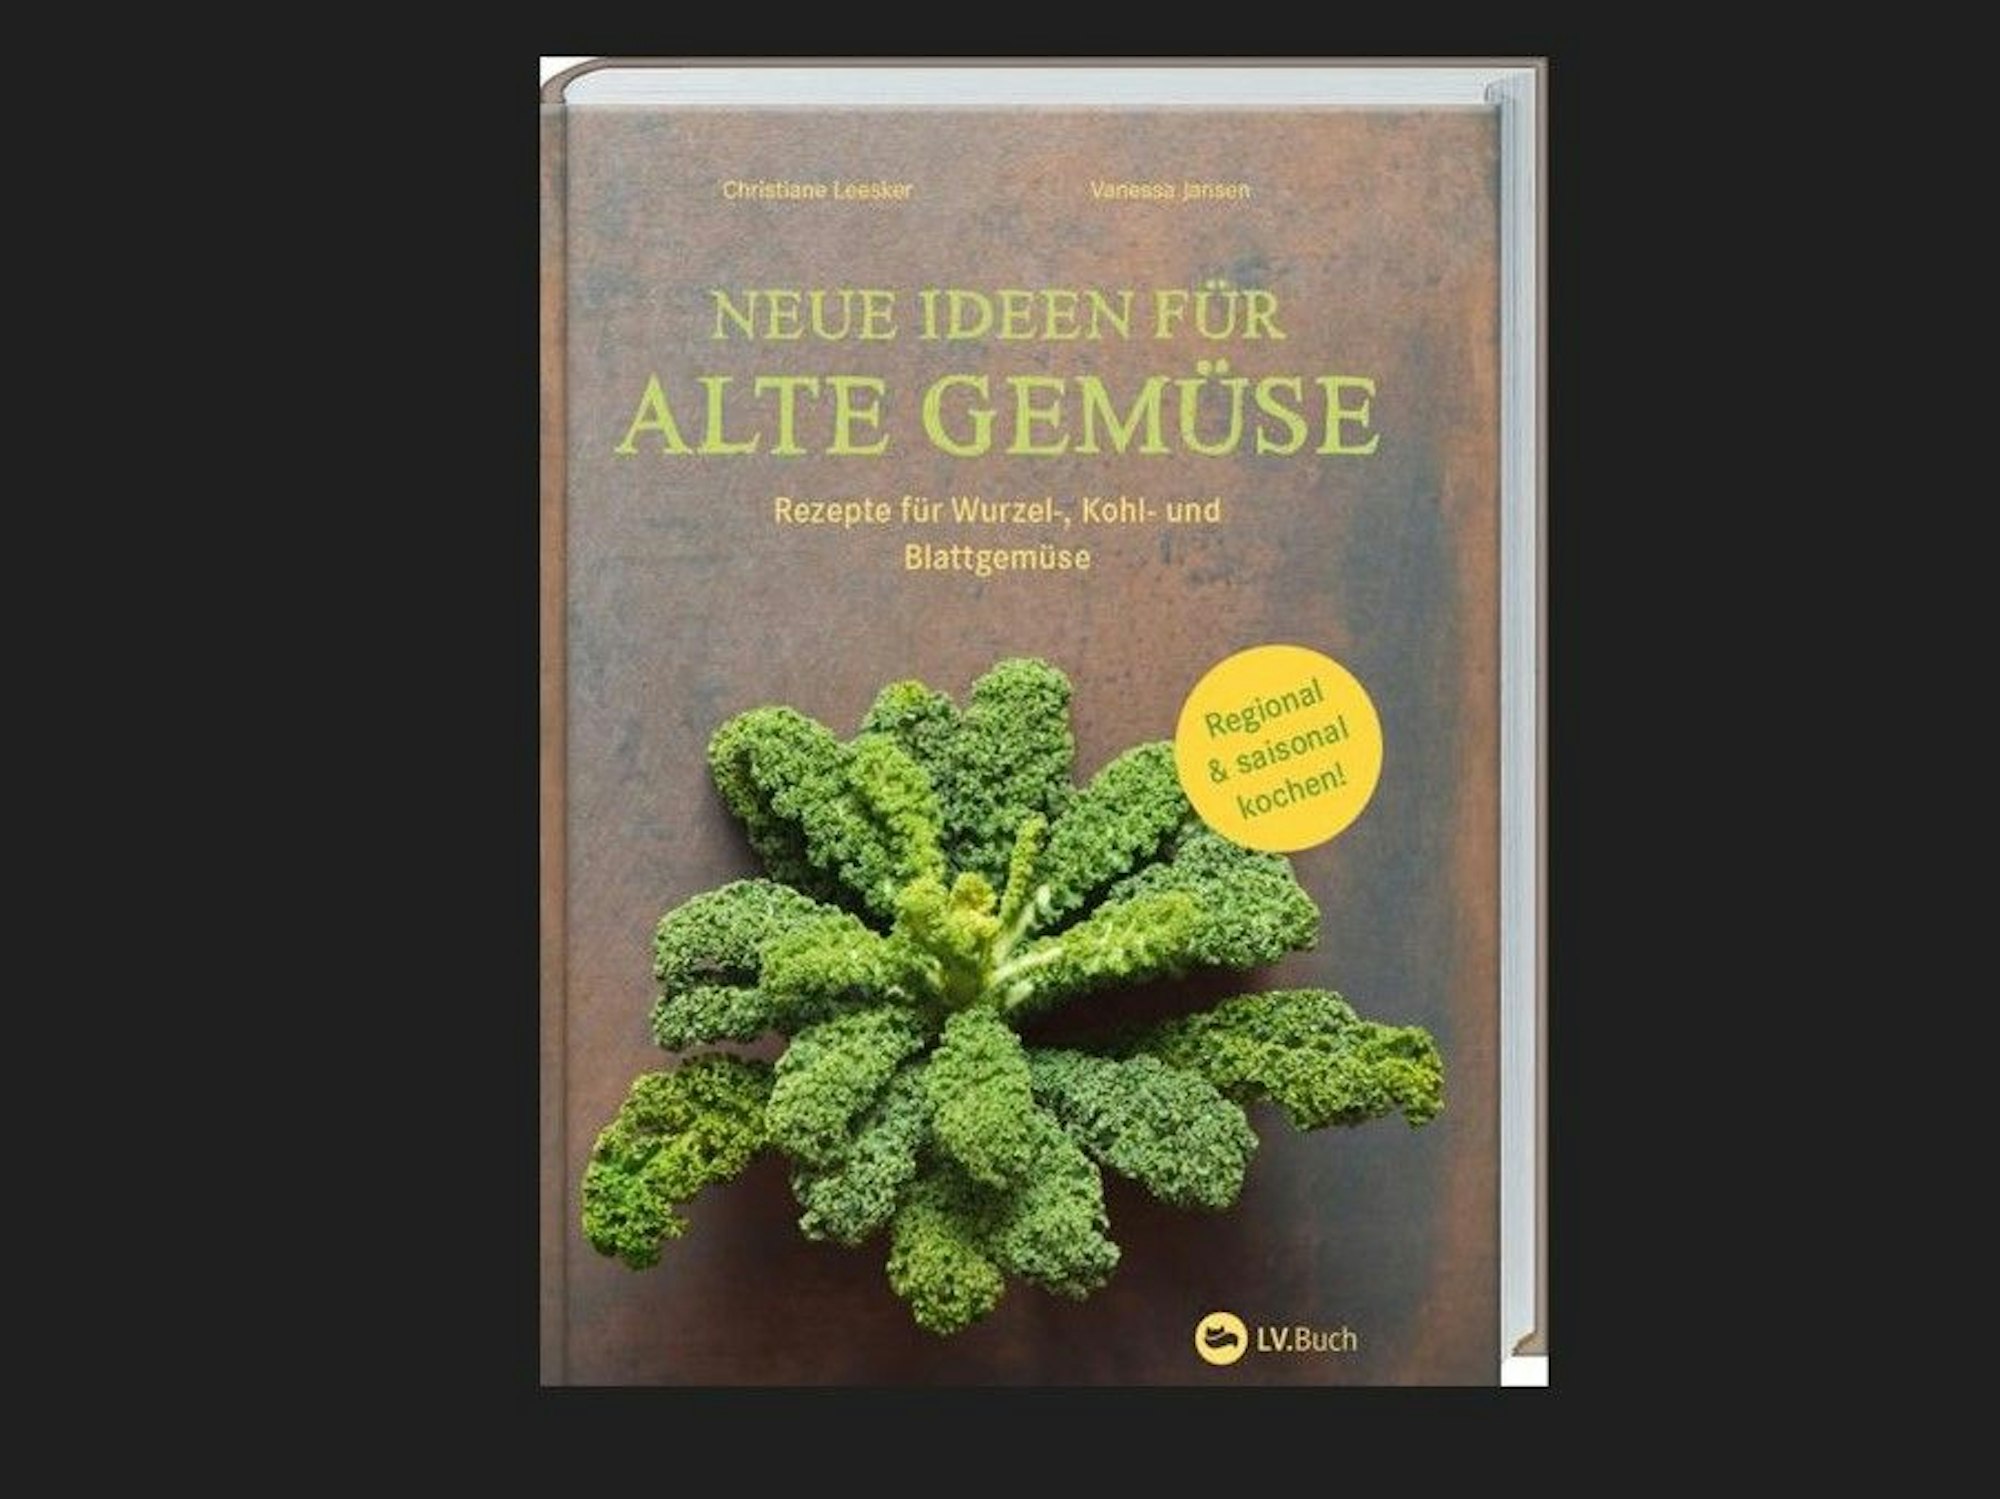 Das Kochbuch „Neue Ideen für alte Gemüse “ von Christiane Leesker und Vanessa Jansen bietet Rezepte rund um Kohl, Pastinaken, Beete und Topinambur.